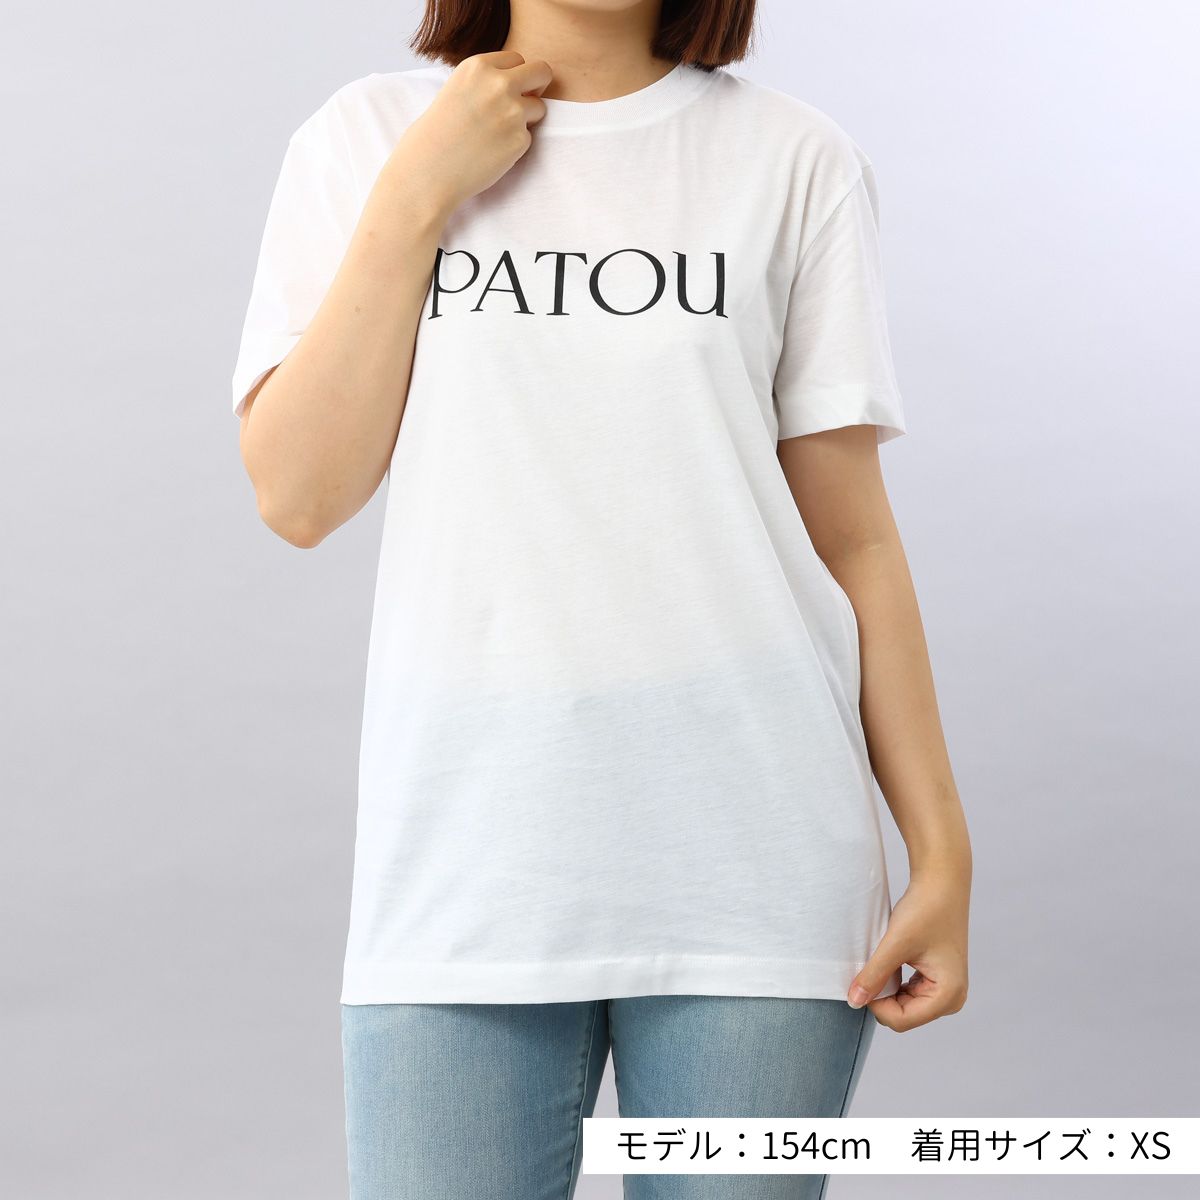 パトゥ PATOU Tシャツ ホワイト JE029 001W JERSEY ロゴ おしゃれ 人気 